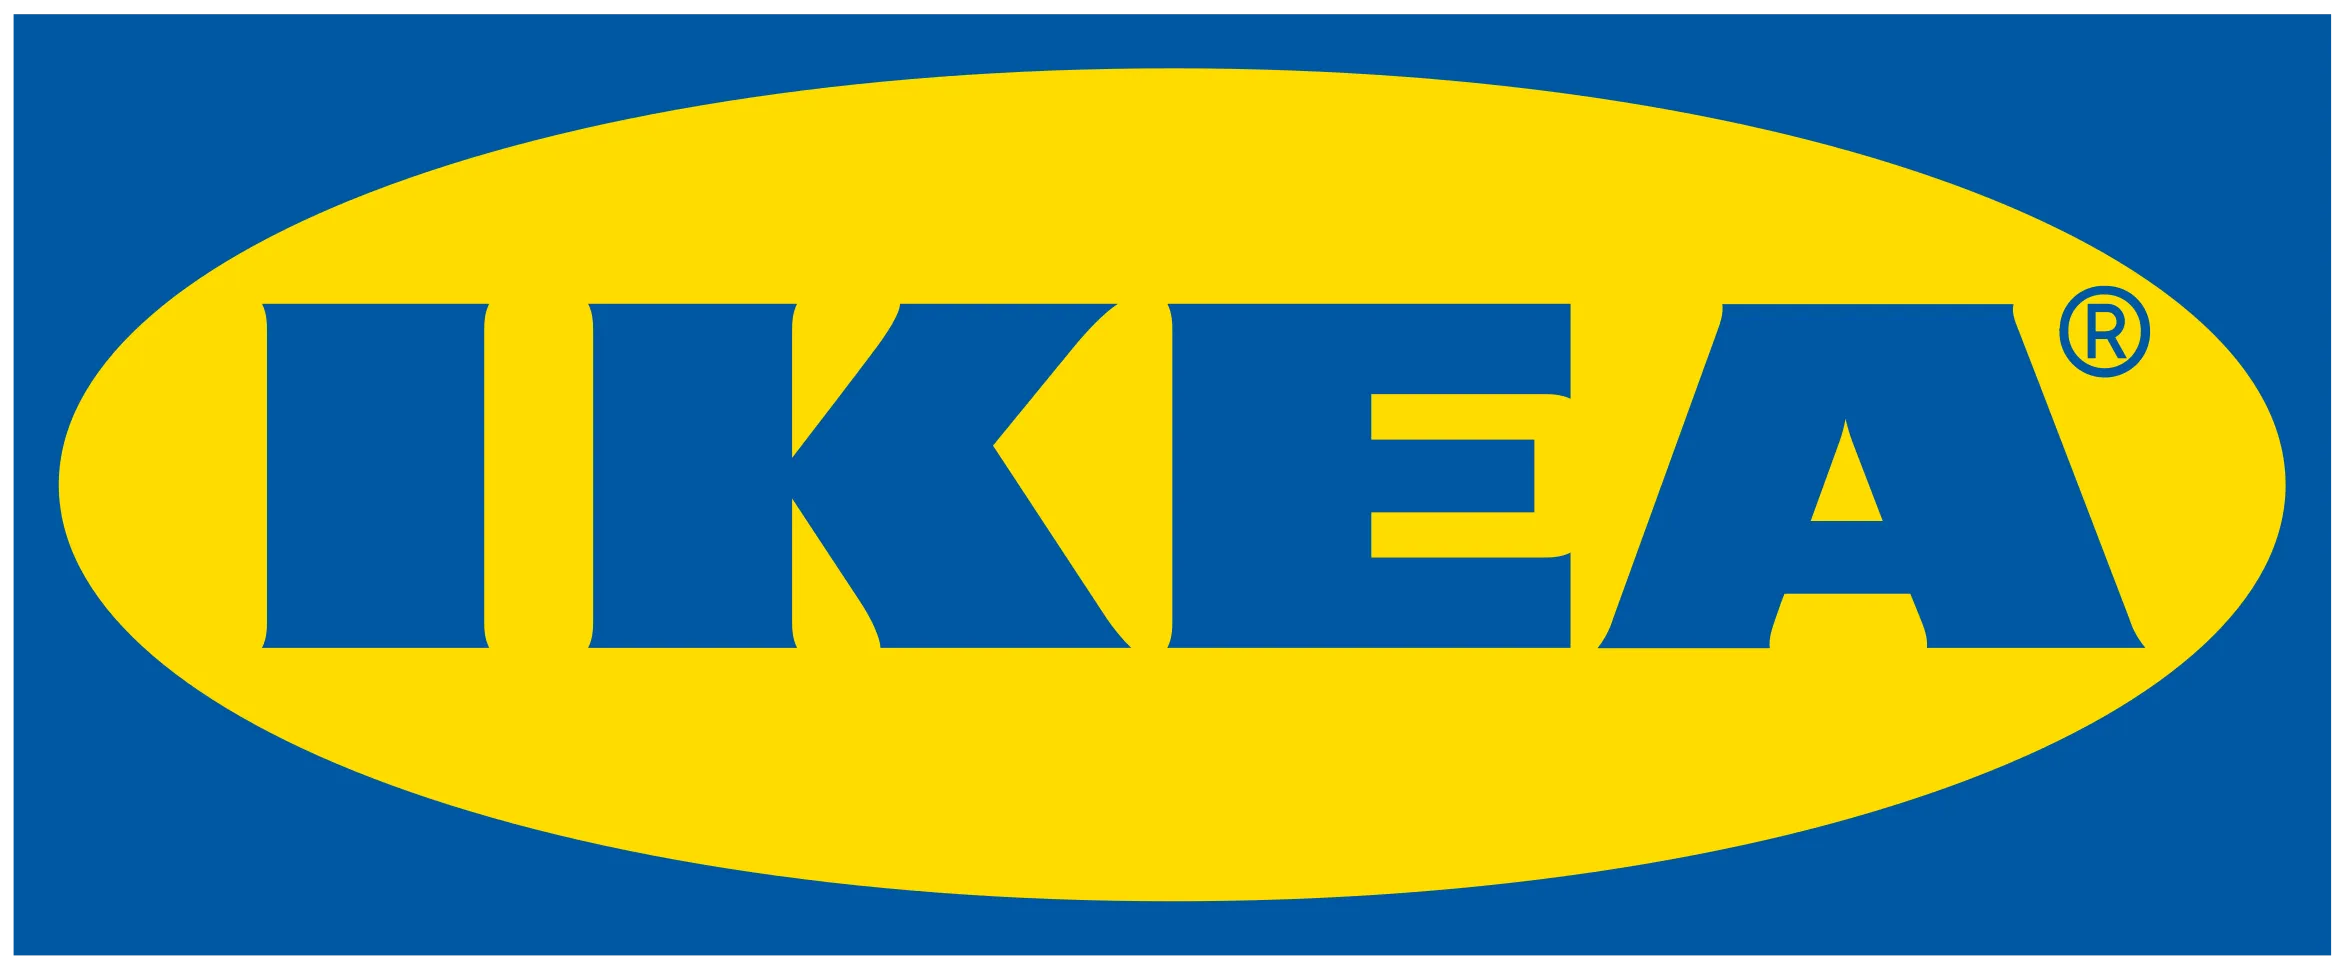 Logo of Ikea - image